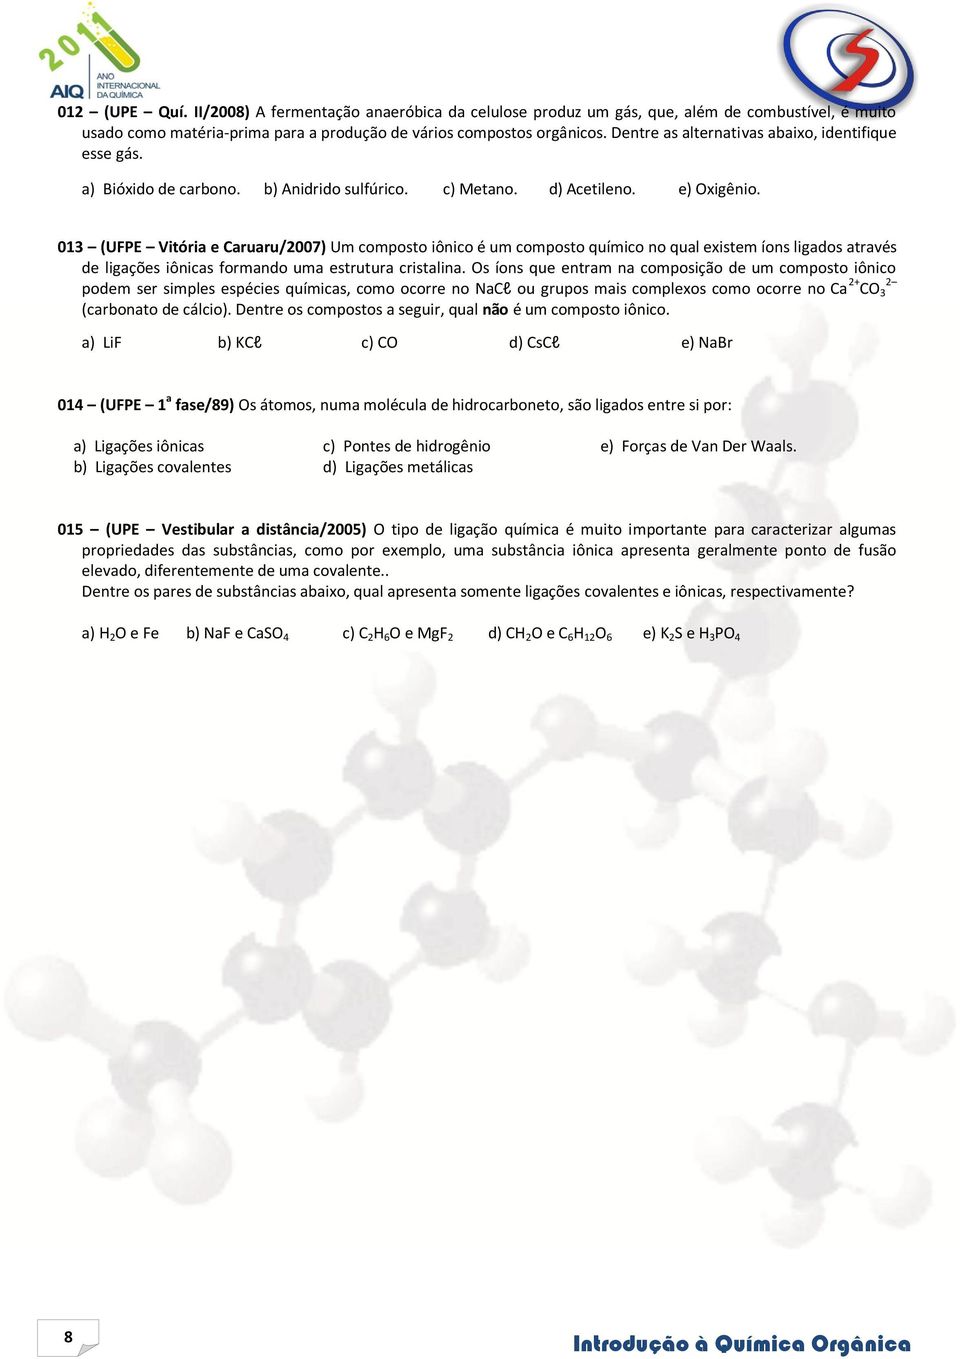 013 (UFPE Vitória e aruaru/2007) Um composto iônico é um composto químico no qual existem íons ligados através de ligações iônicas formando uma estrutura cristalina.